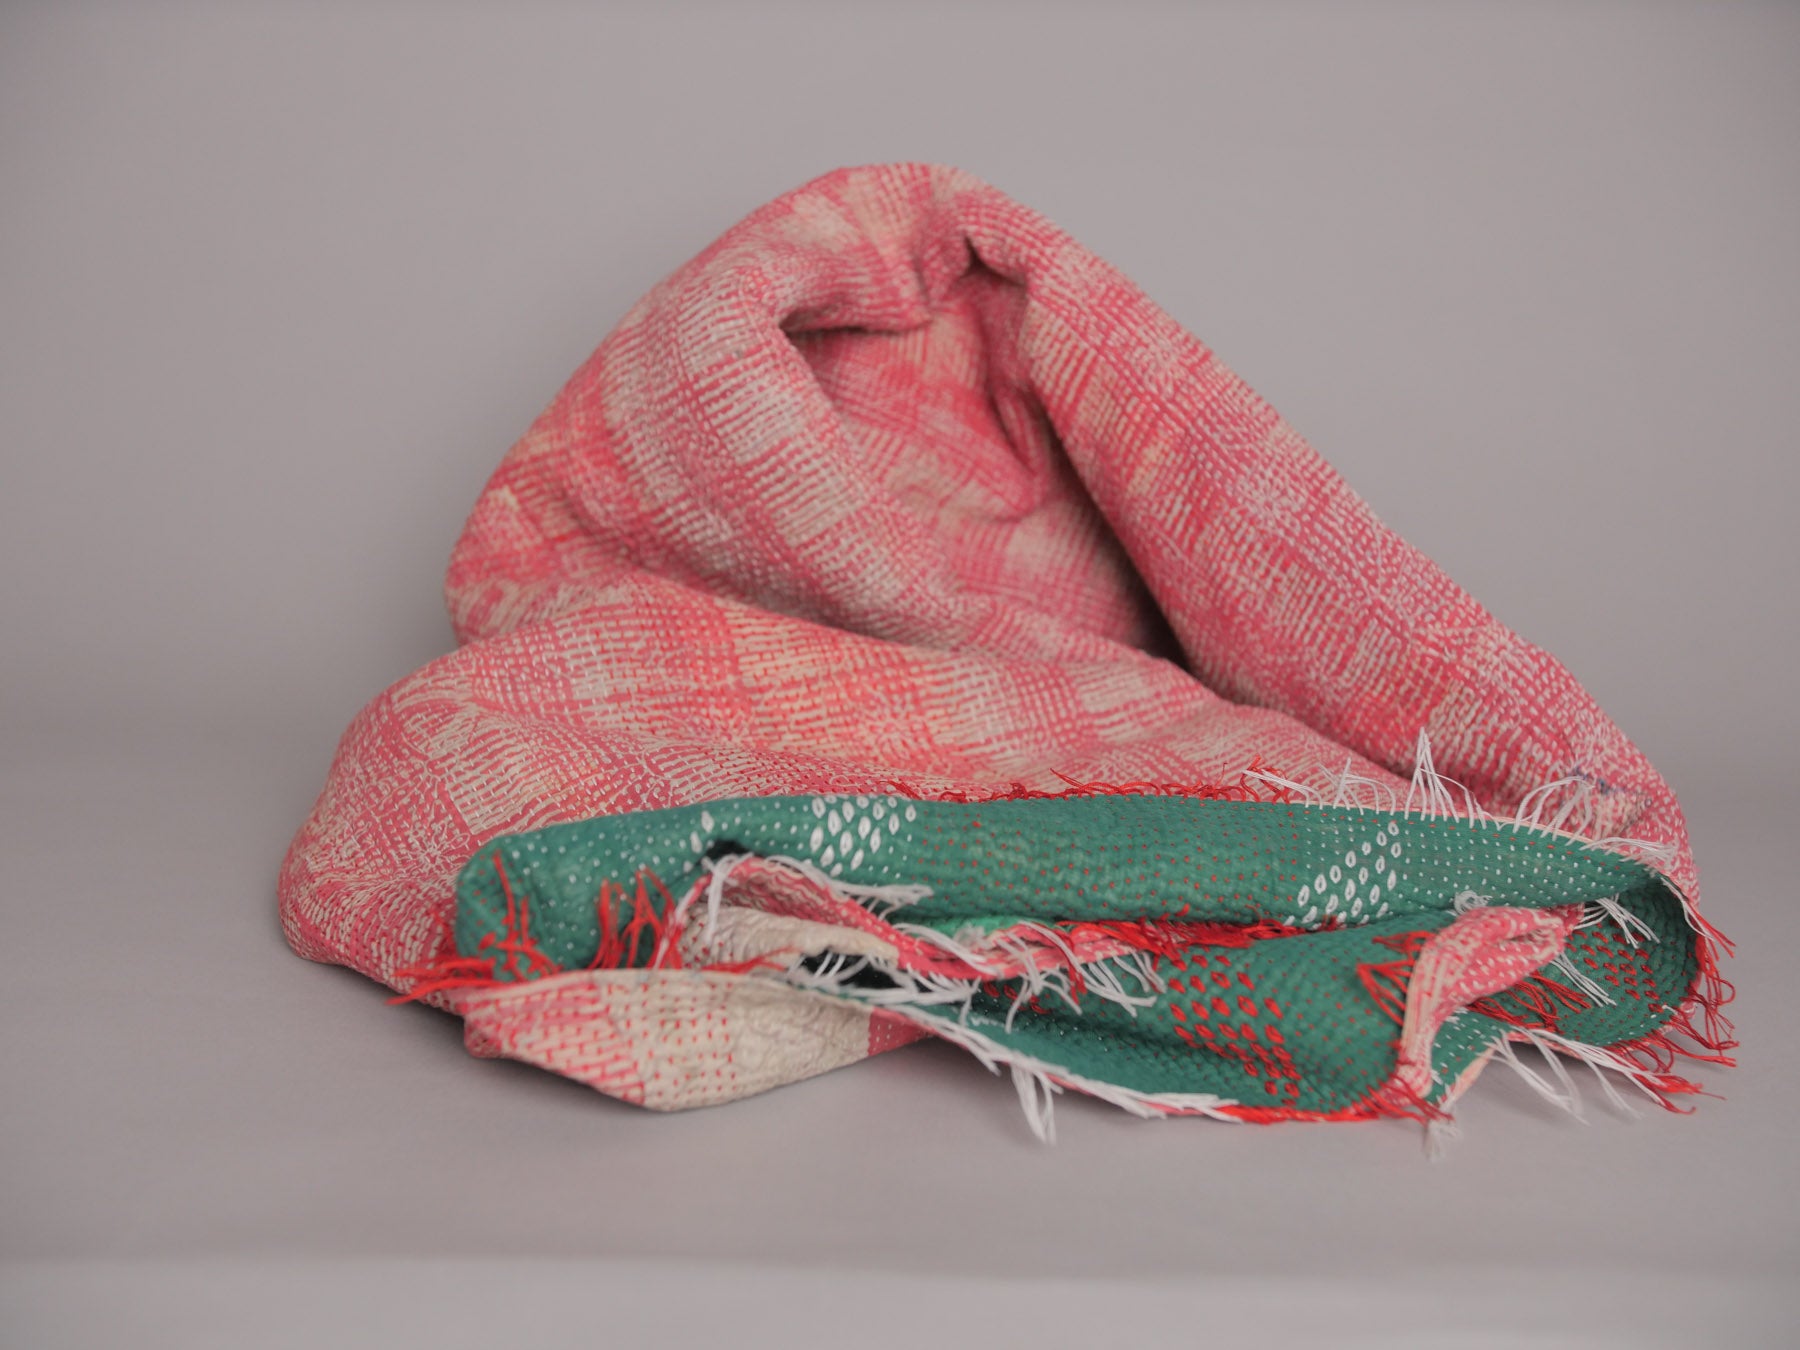 Couvre lit Kantha en textiles recyclées, vert avec bordé recto, rouge verso.